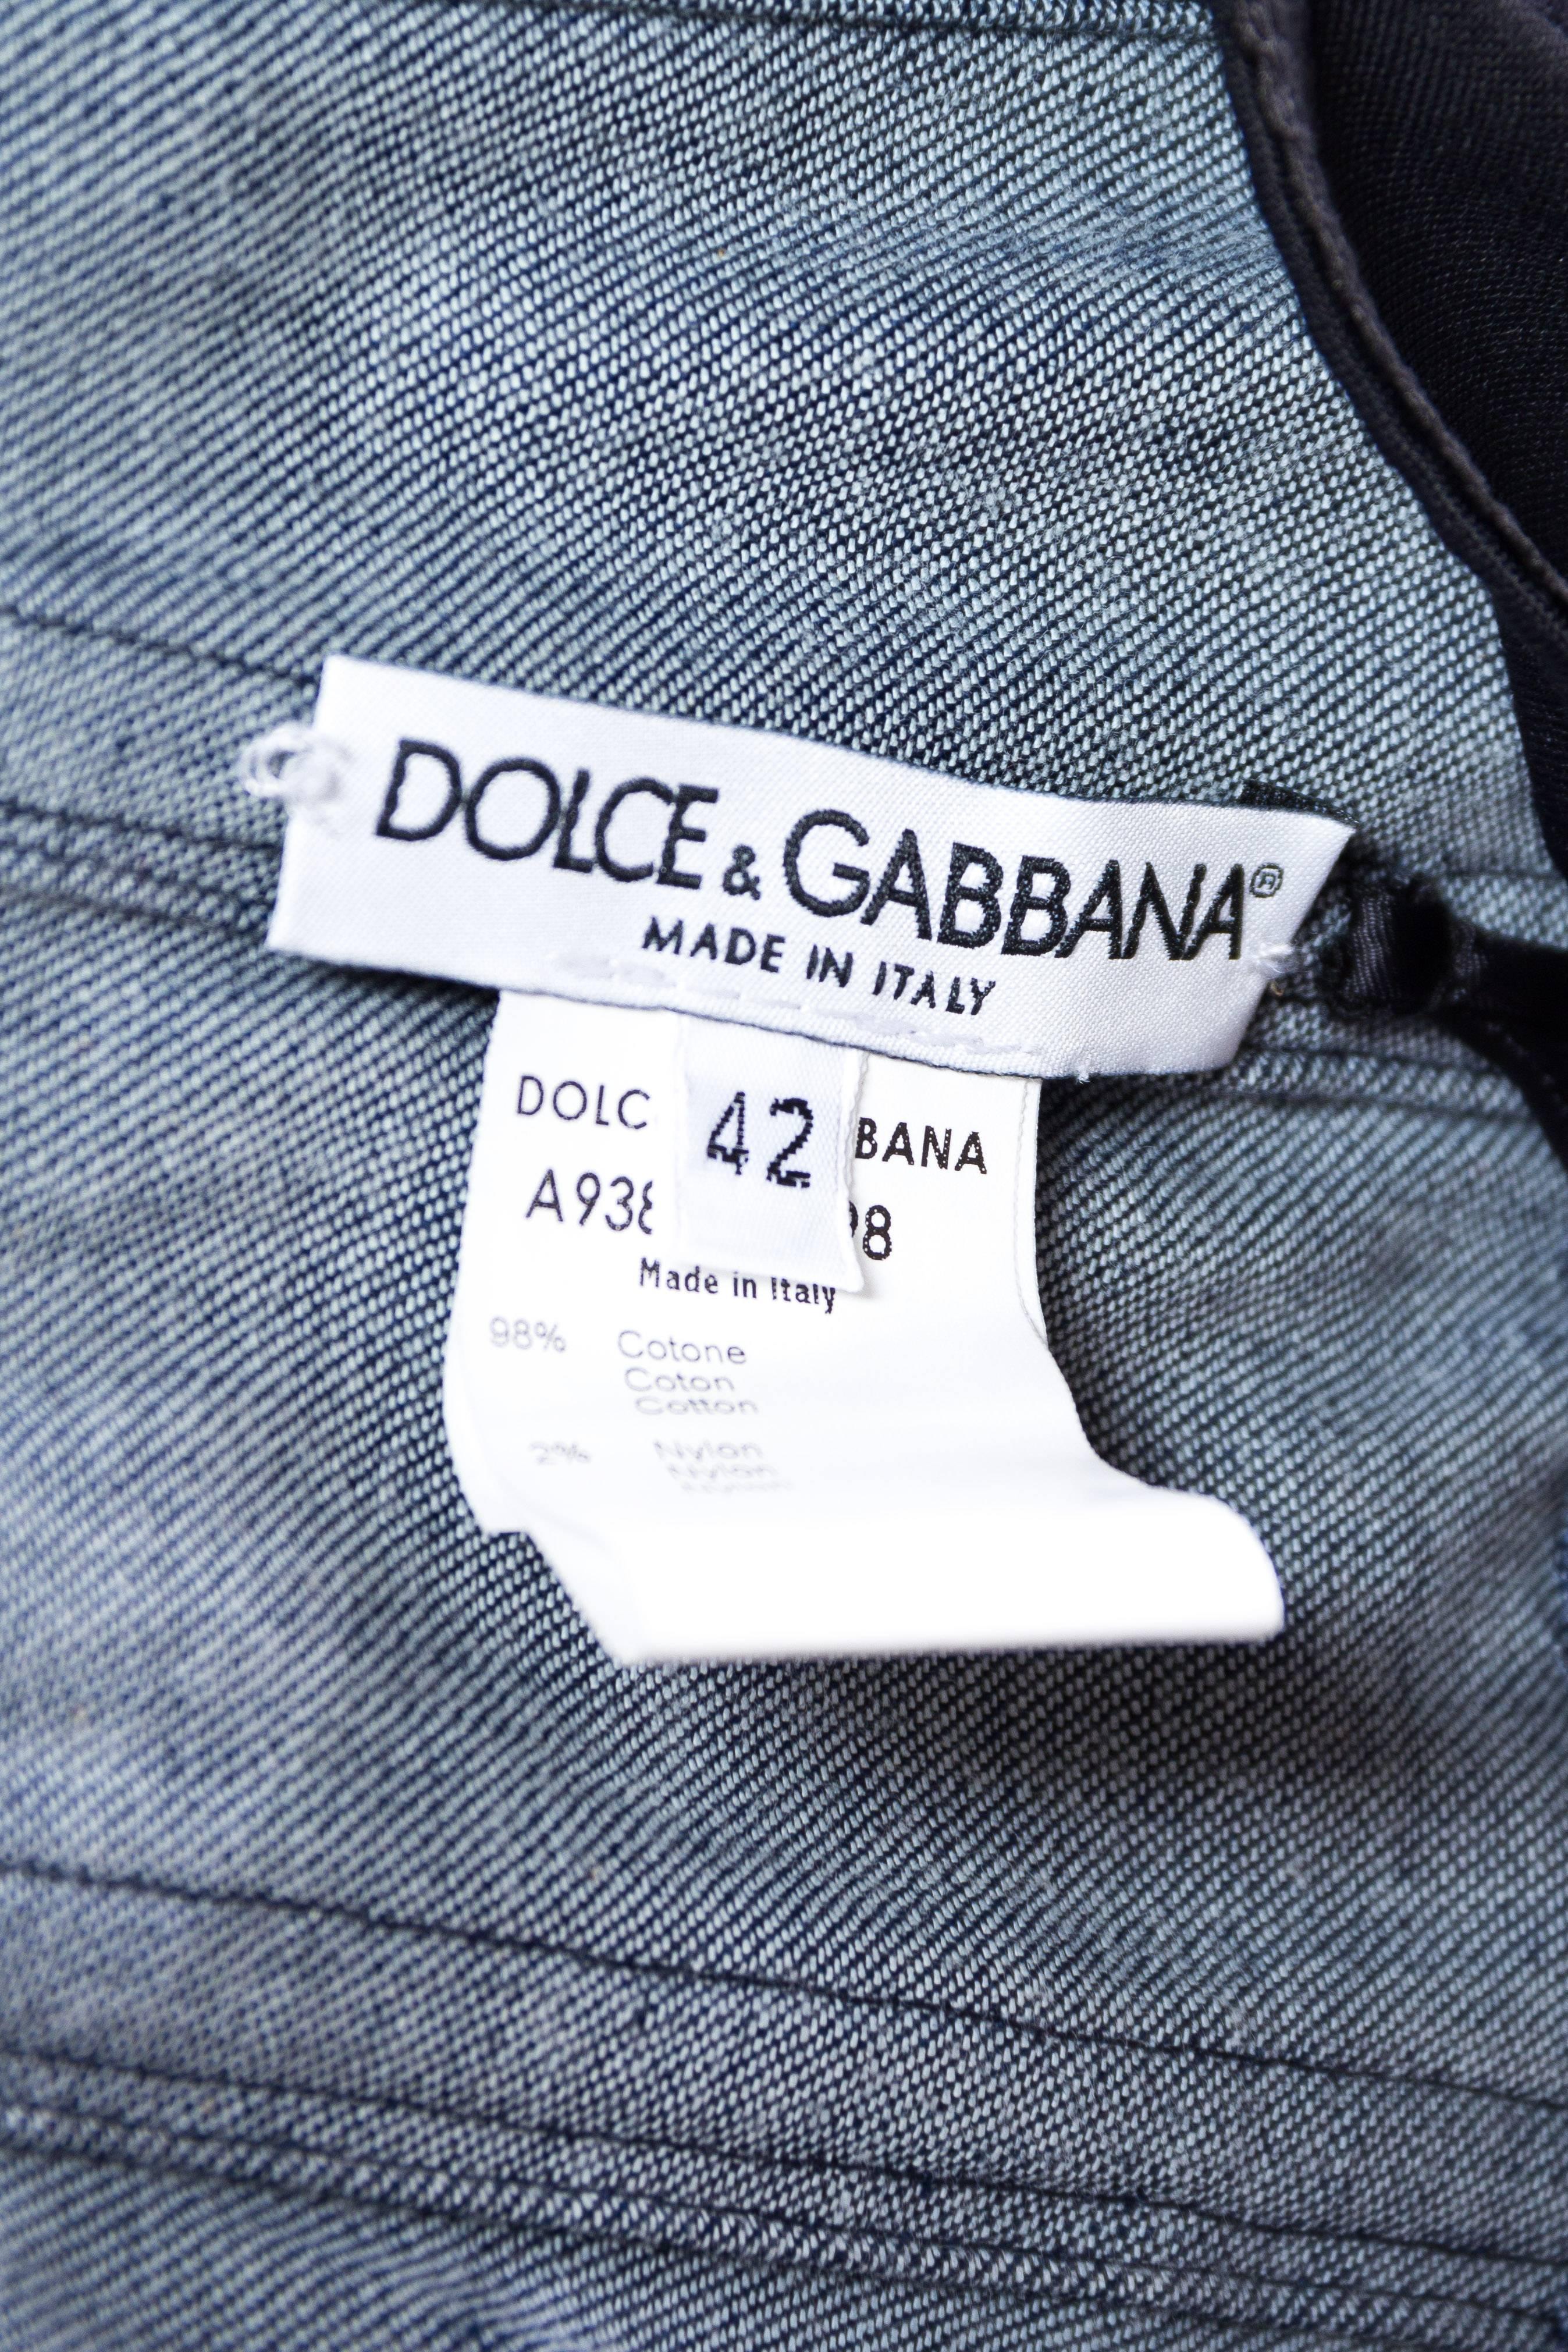 Dolce & Gabbana Studded Denim Corset 5